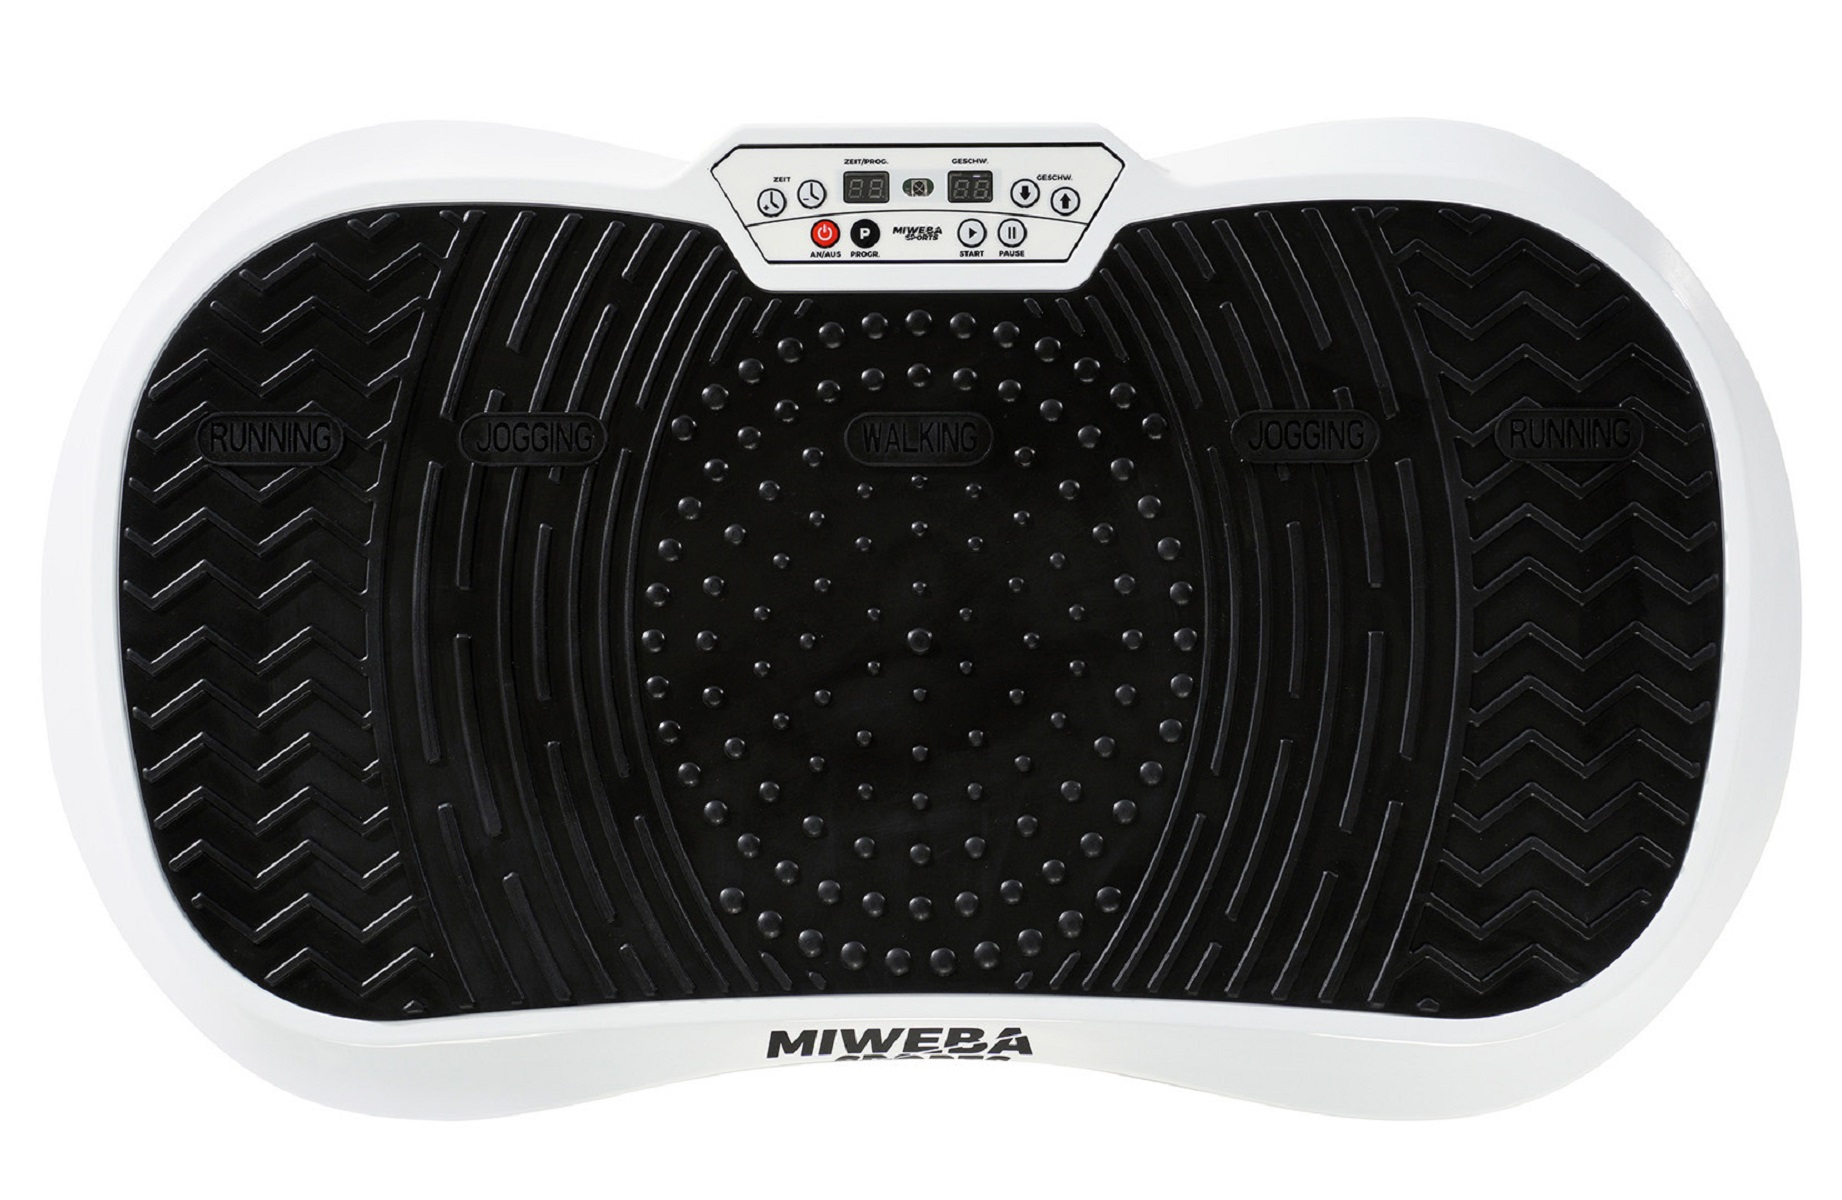 weiß MIWEBA 2D SPORTS Vibrationsplatte, MV100